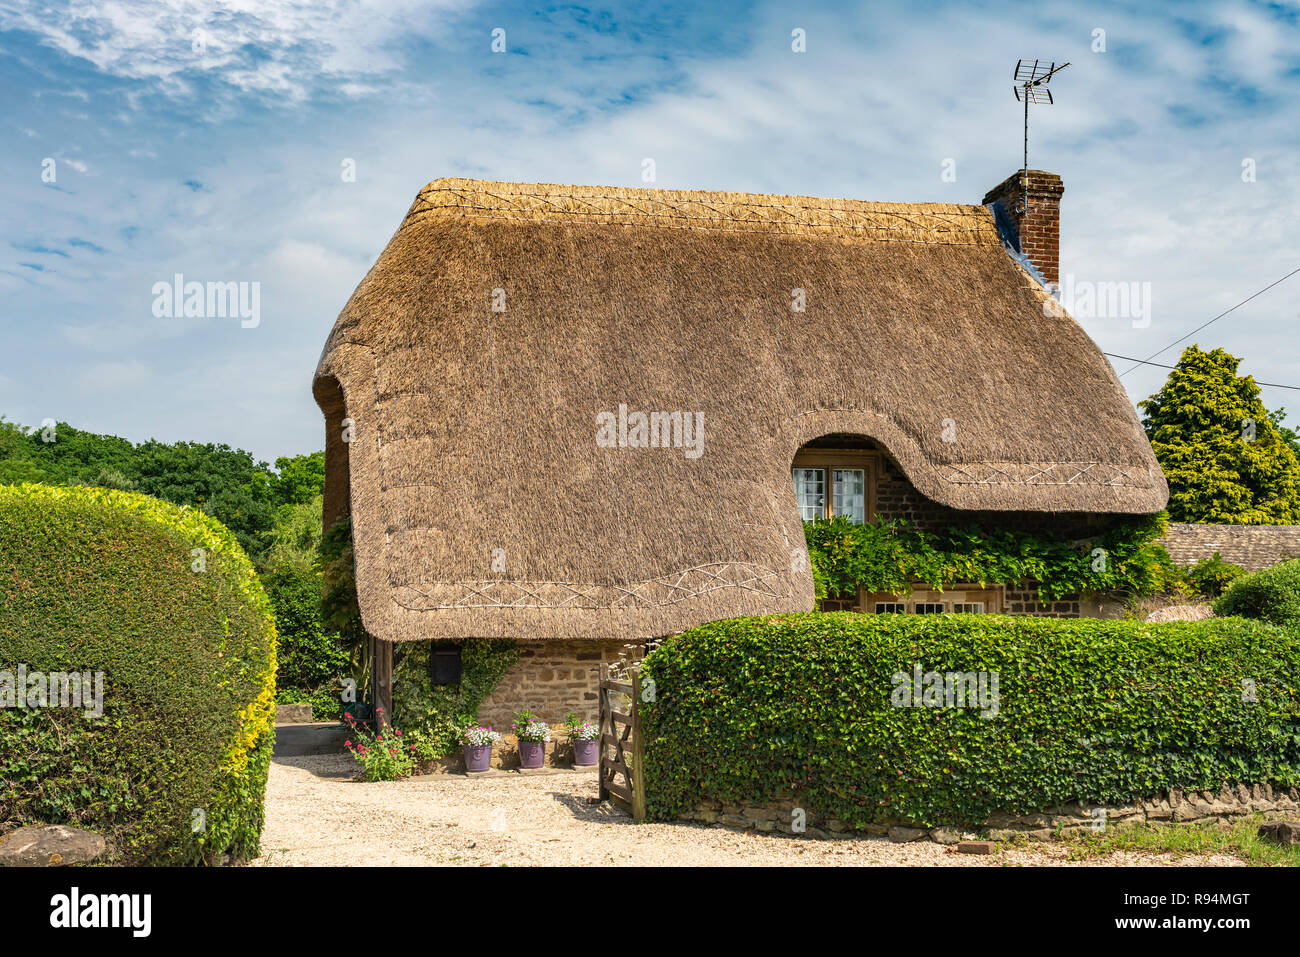 Un cottage au toit de chaume près du village de Lacock, Wiltshire, Angleterre, Europe. Banque D'Images